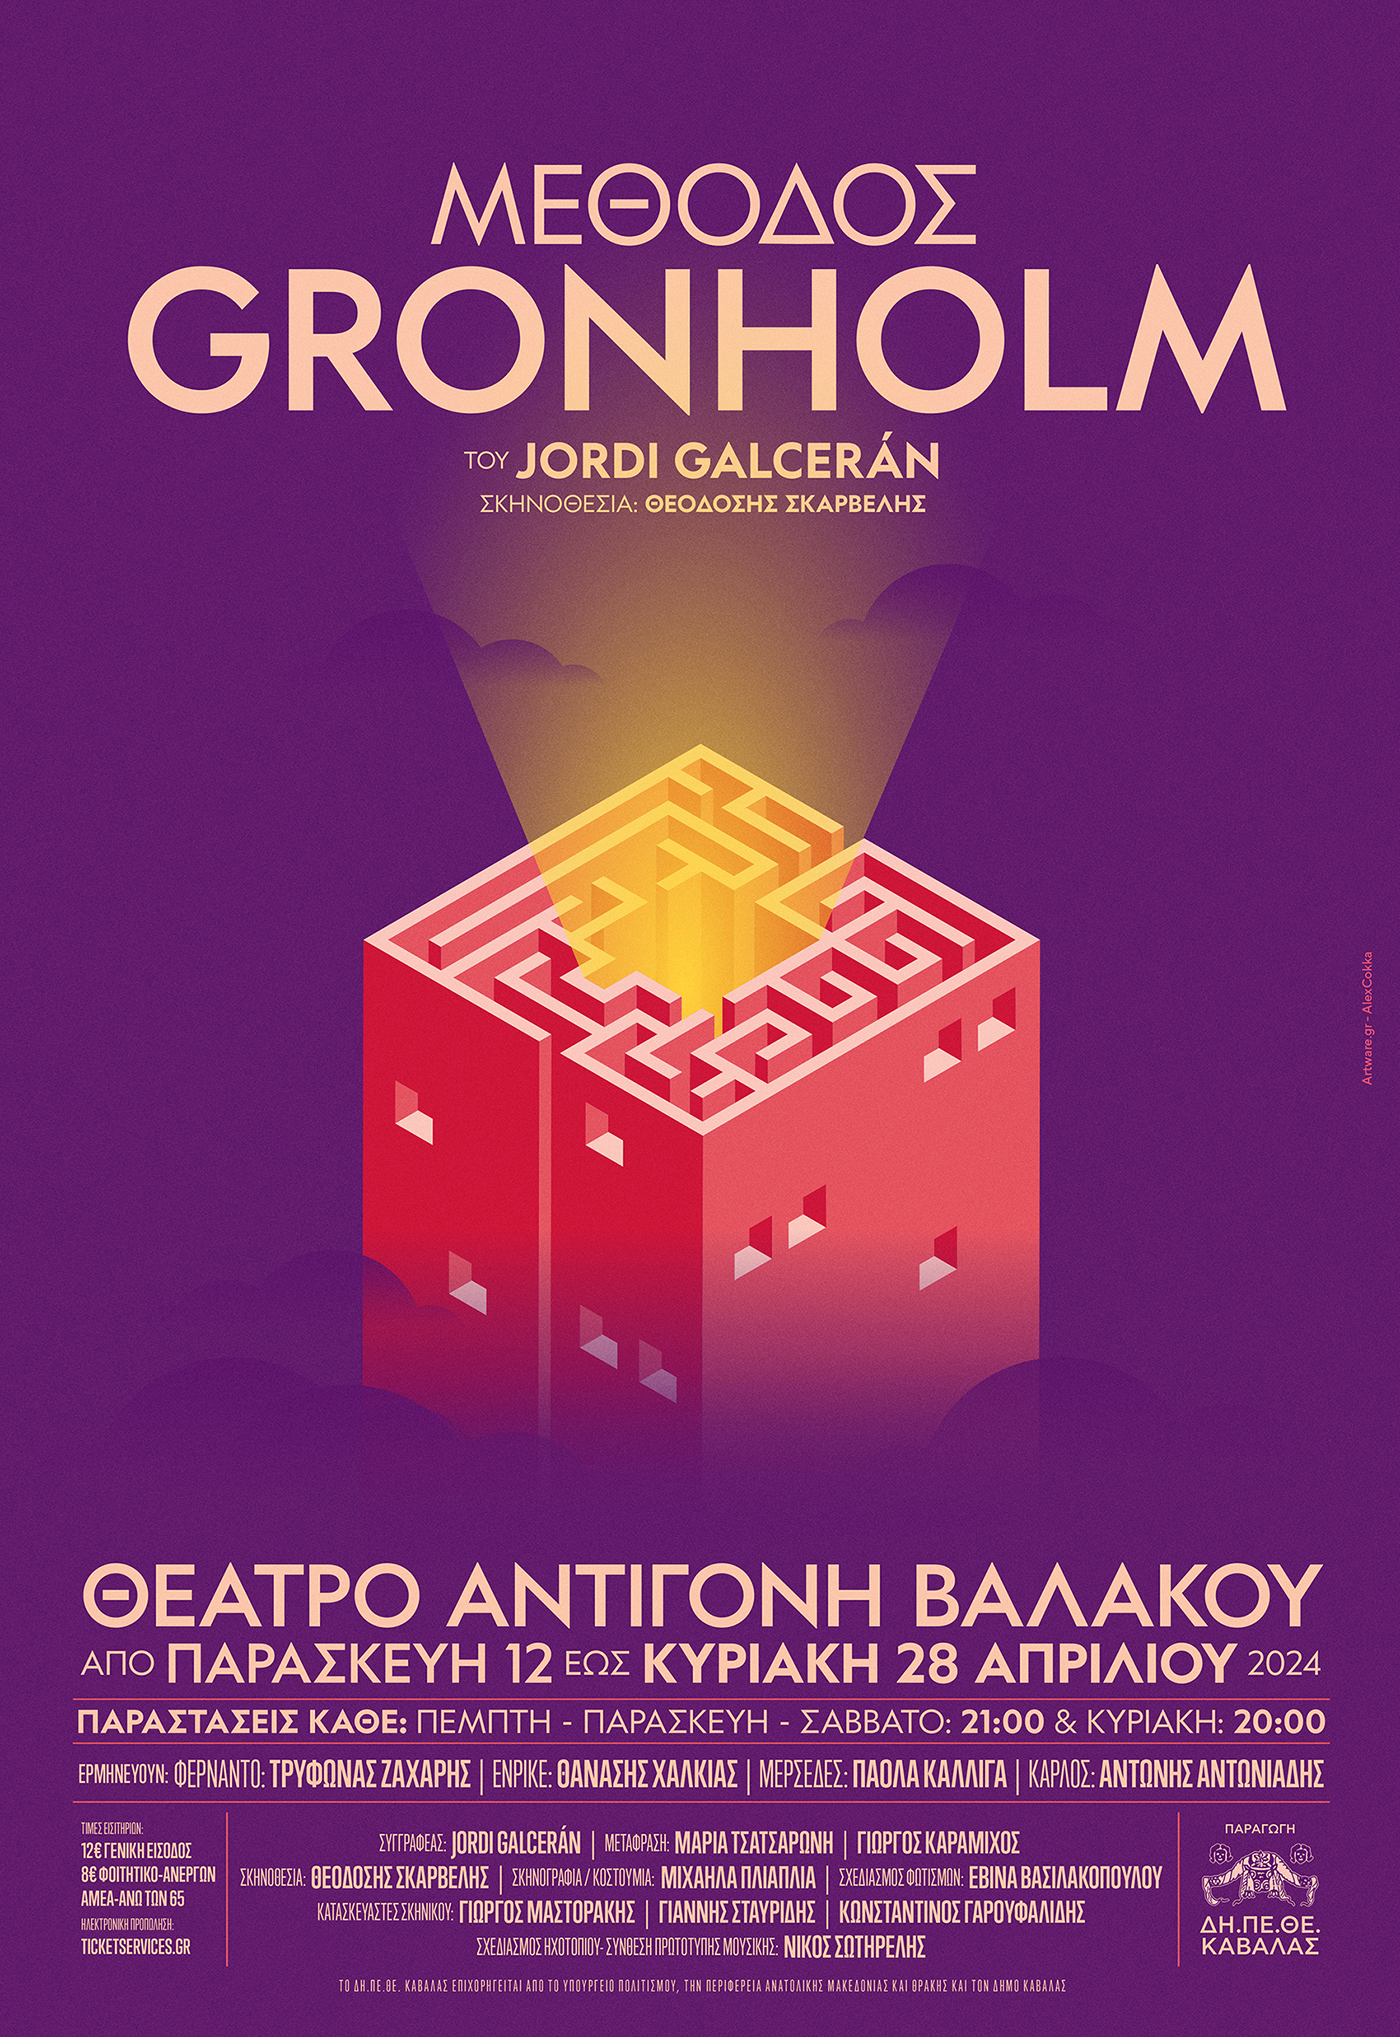 ΔΗΠΕΘΕ Καβάλας-Θέατρο Αντιγόνη Βαλάκου:  “Μέθοδος Gronholm” του Jordi Galcerán